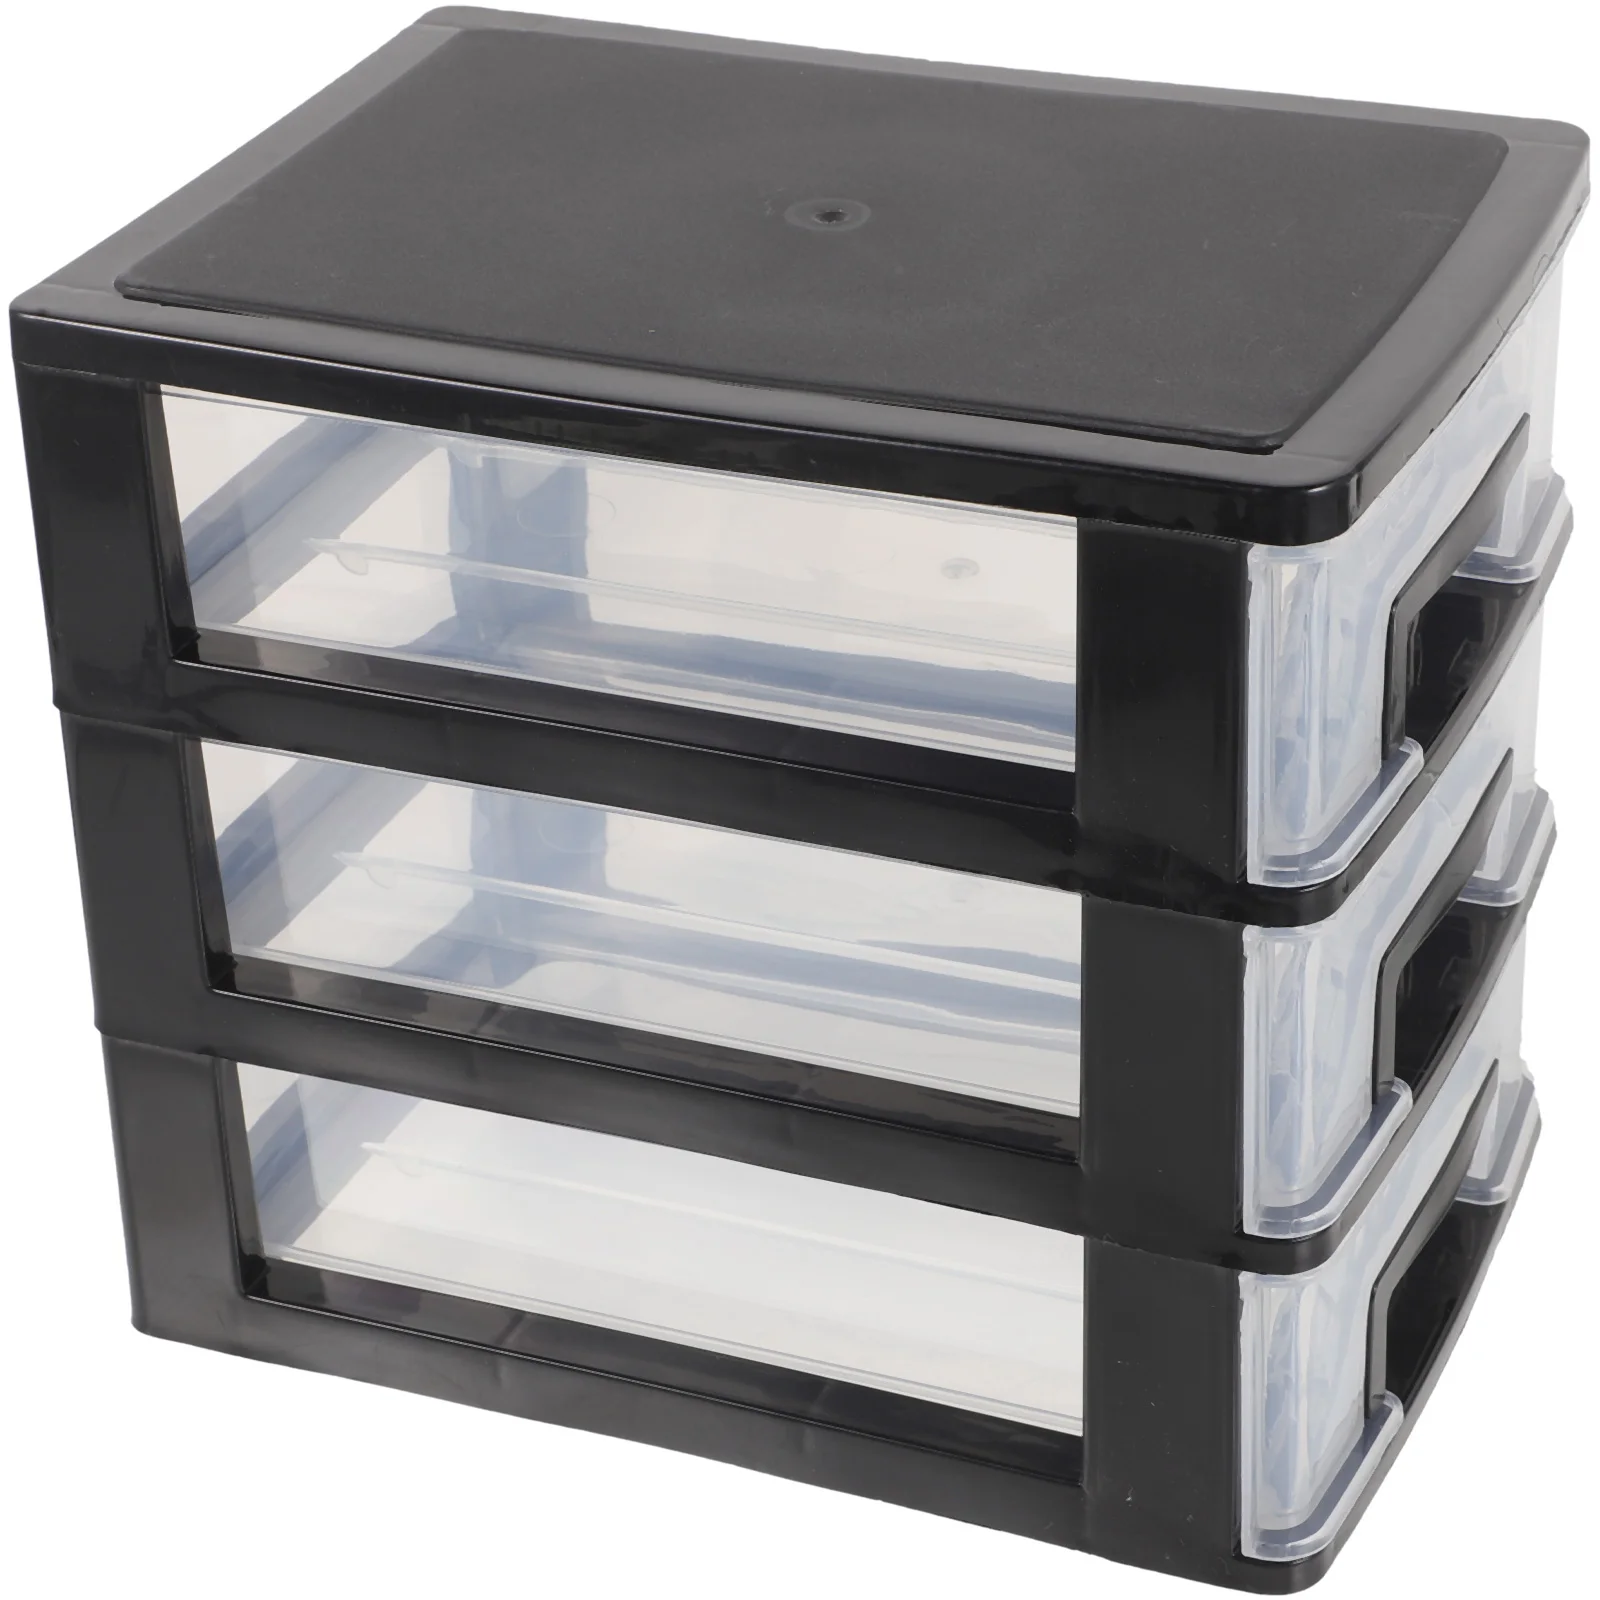 stolové zásuvky organizátor 3 vrstvy box malý balík office úložný box tabuľka nečistoty držiak ( black malé zásuvky organizátor a Poličky